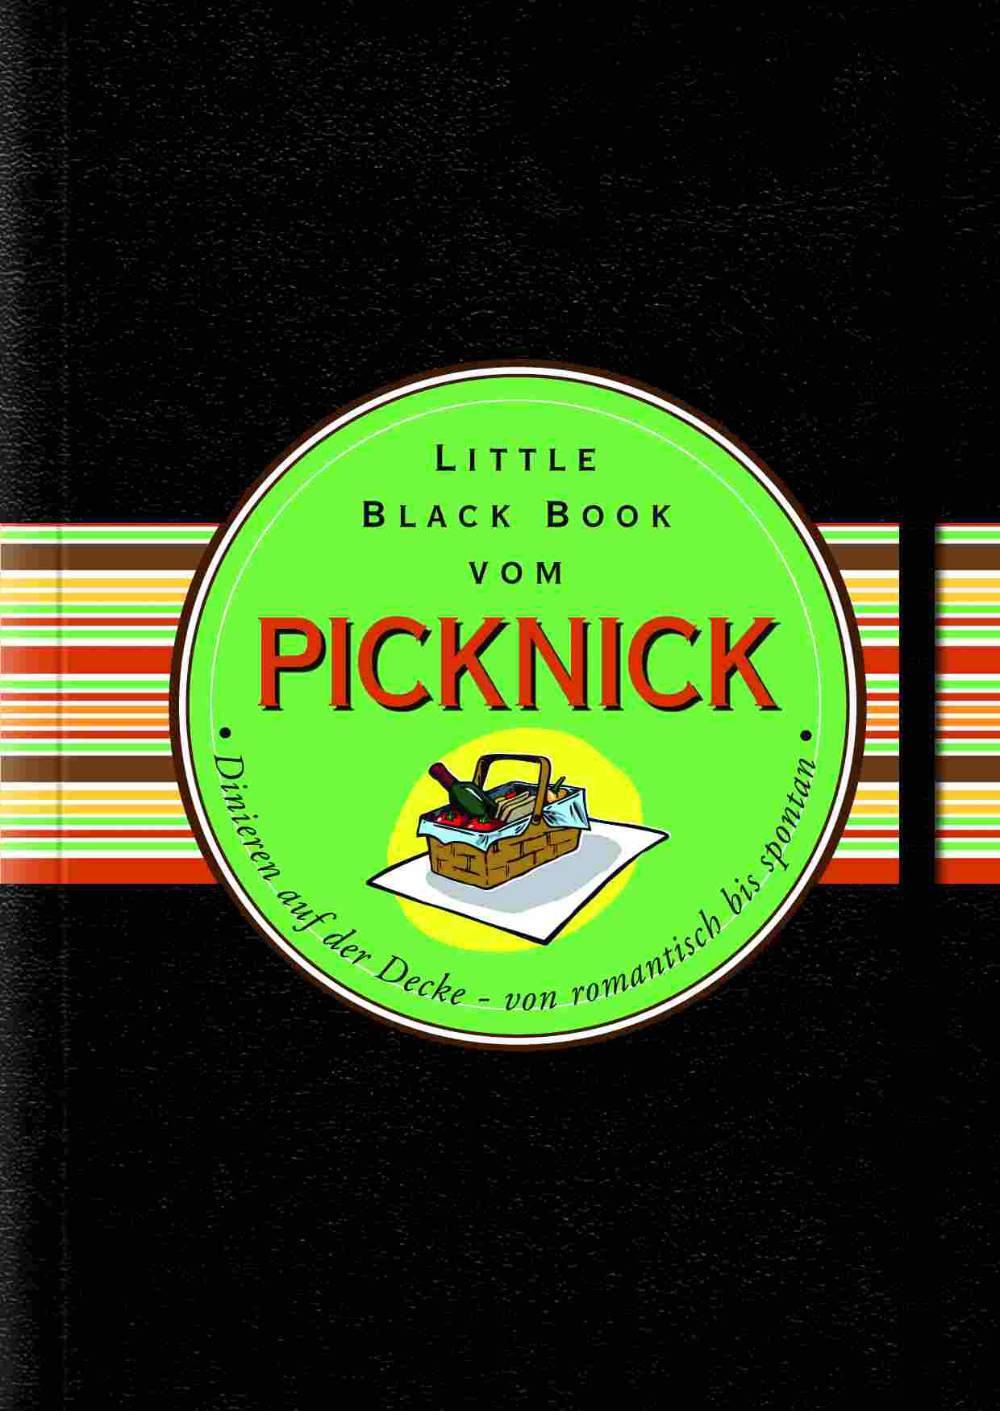 Picknick 2012